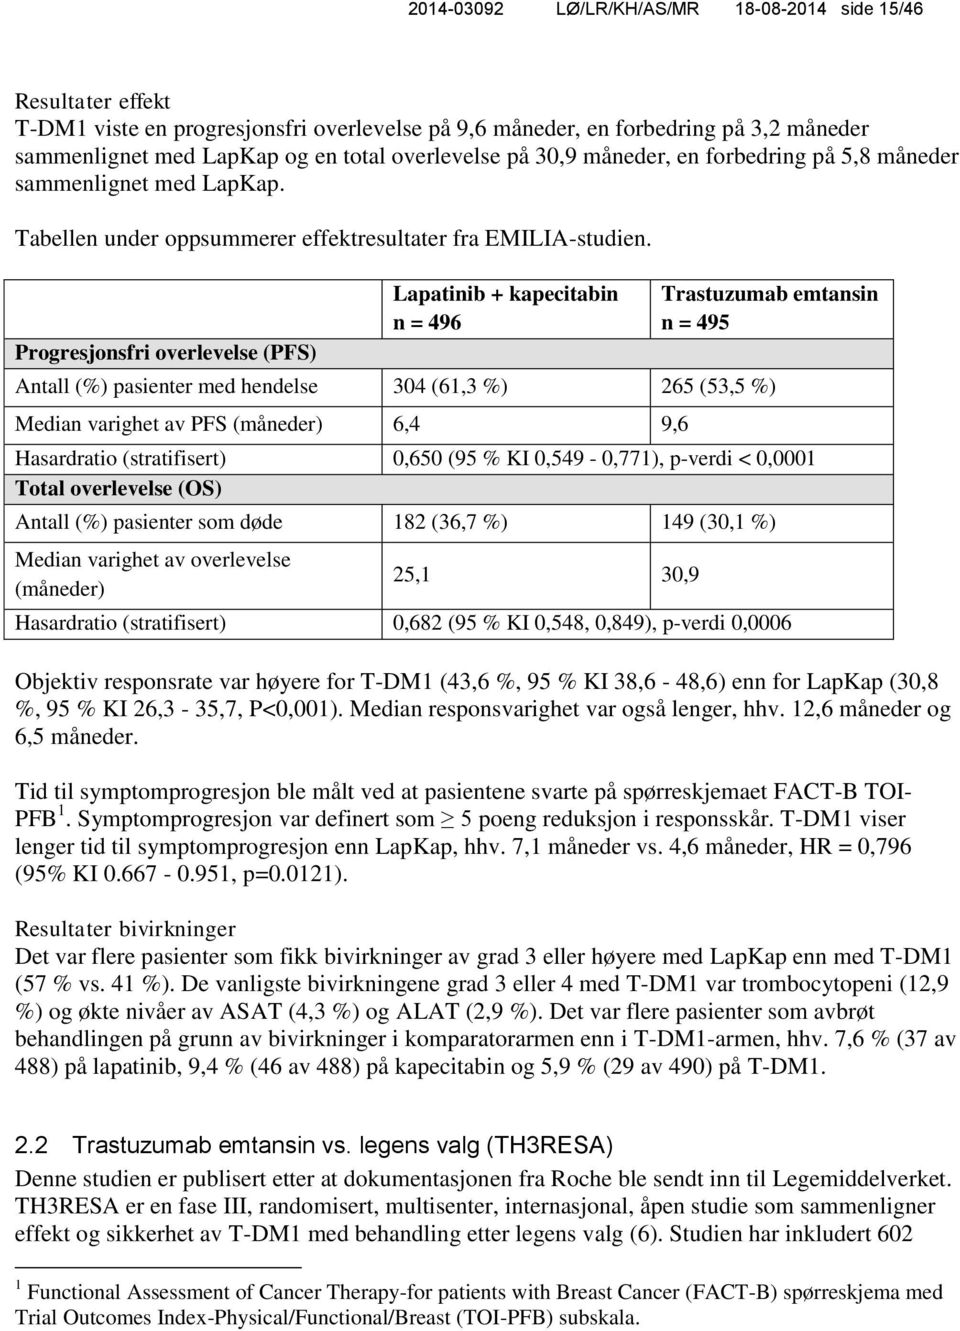 Progresjonsfri overlevelse (PFS) Lapatinib + kapecitabin n = 496 Trastuzumab emtansin n = 495 Antall (%) pasienter med hendelse 304 (61,3 %) 265 (53,5 %) Median varighet av PFS (måneder) 6,4 9,6